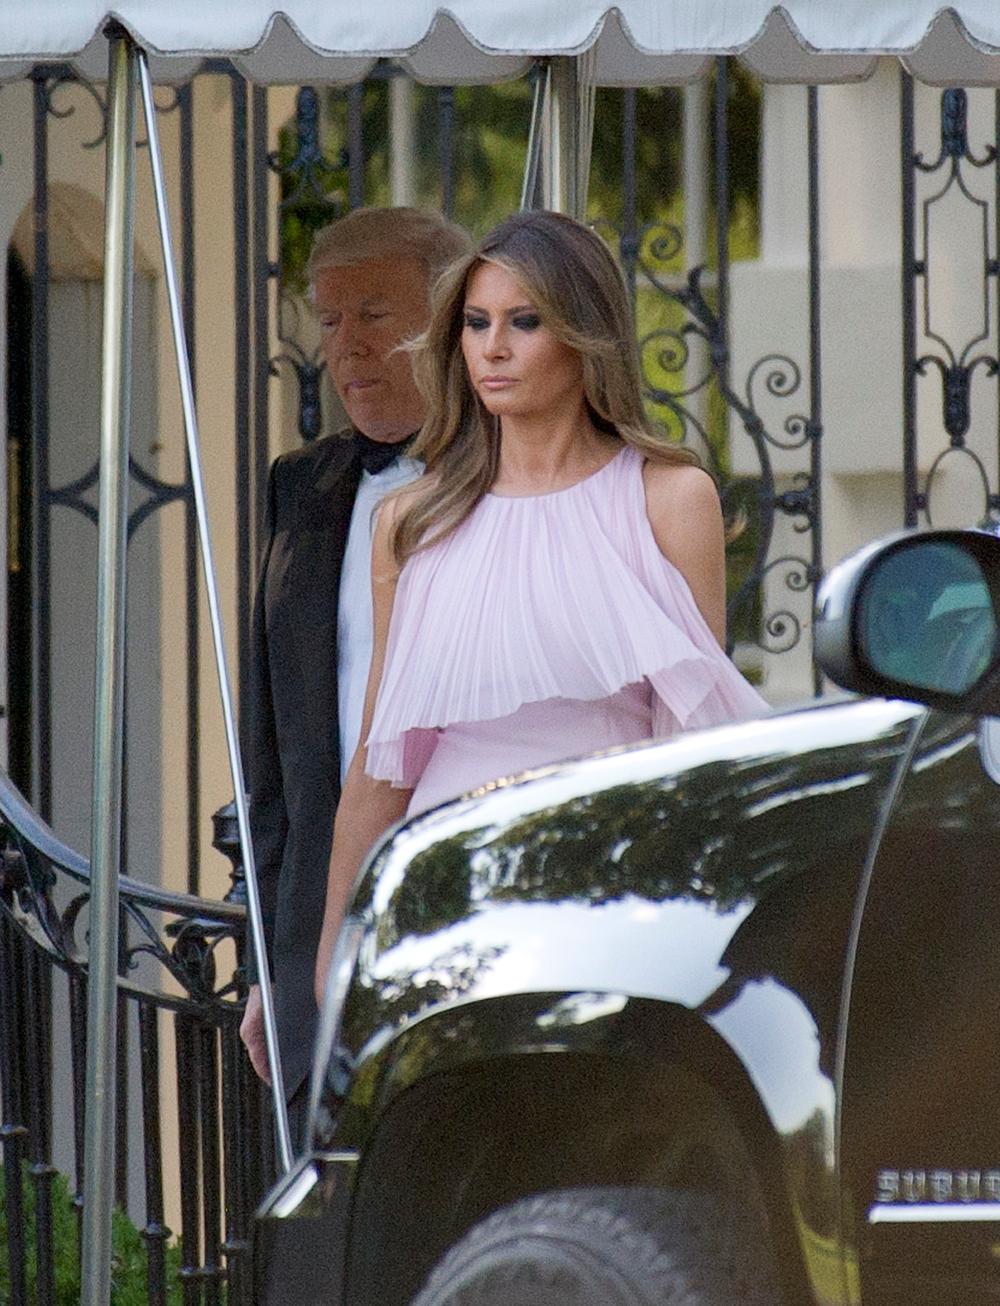 <p>Dugačka, ljubičasta haljina od šifona zaista je nešto posebno - naročito ako je nosi prva dama Amerike!</p>